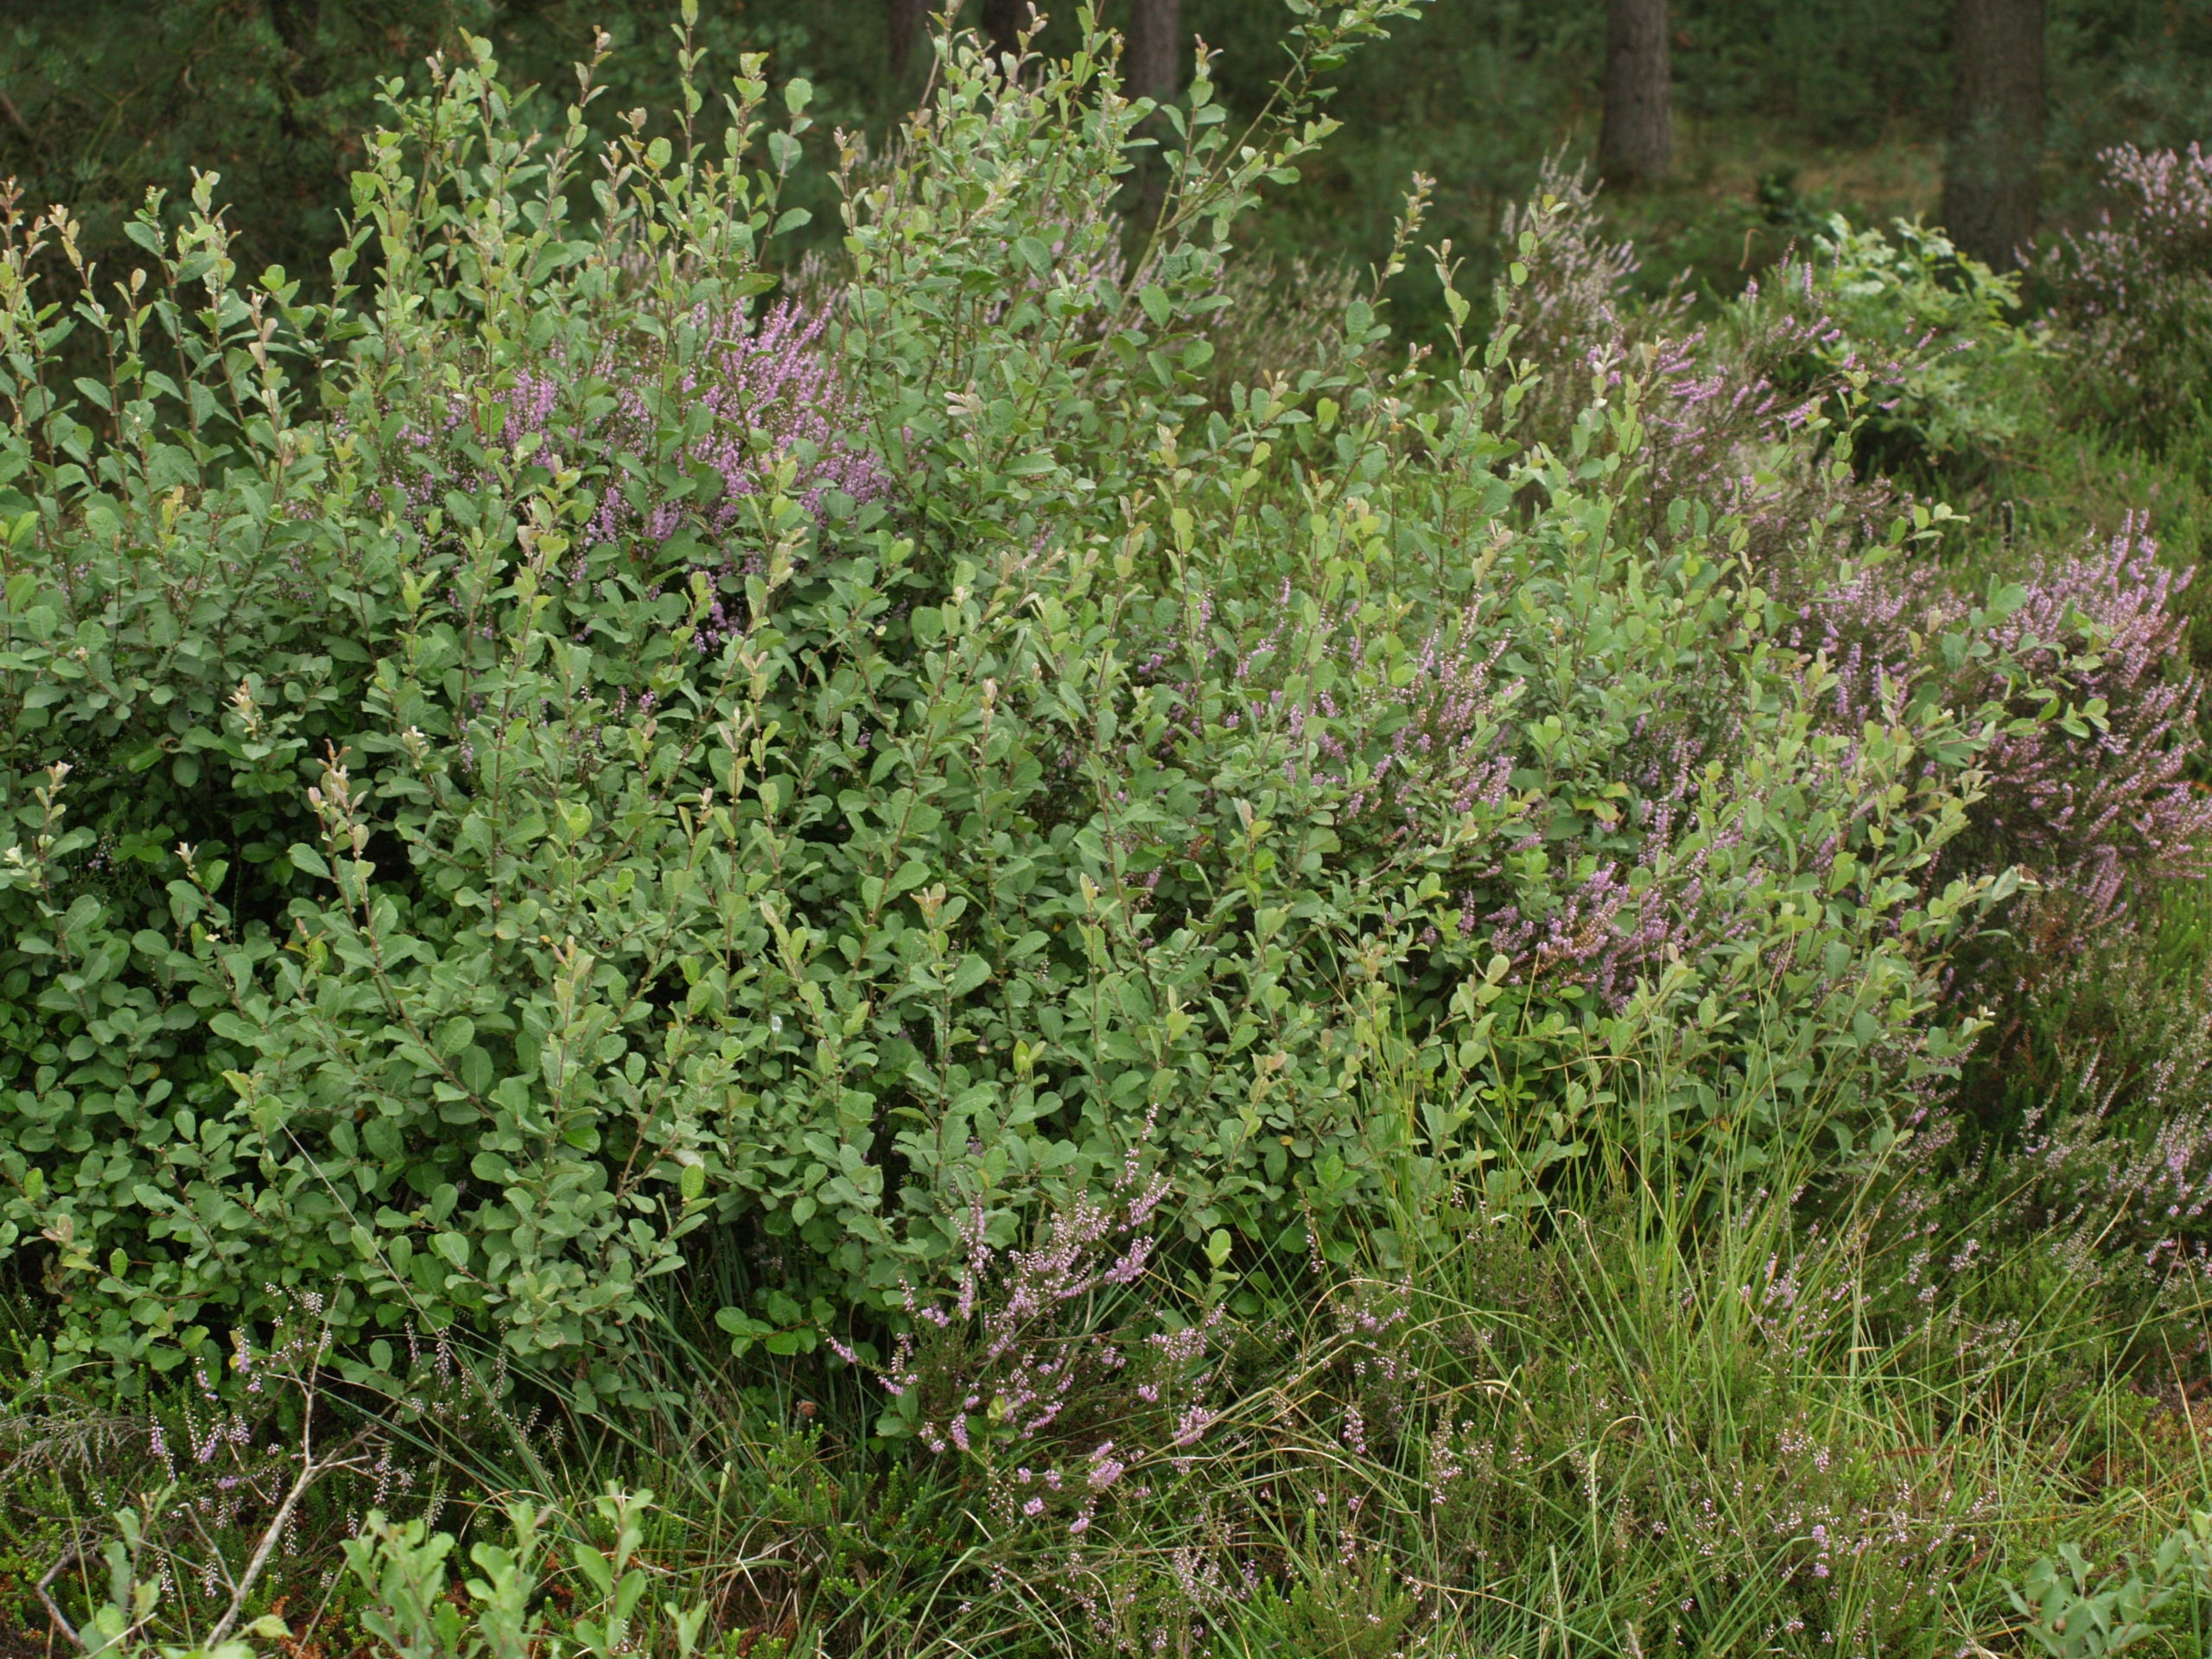 Geoorde wilg - Salix aurita : Los stuk wortelgoed